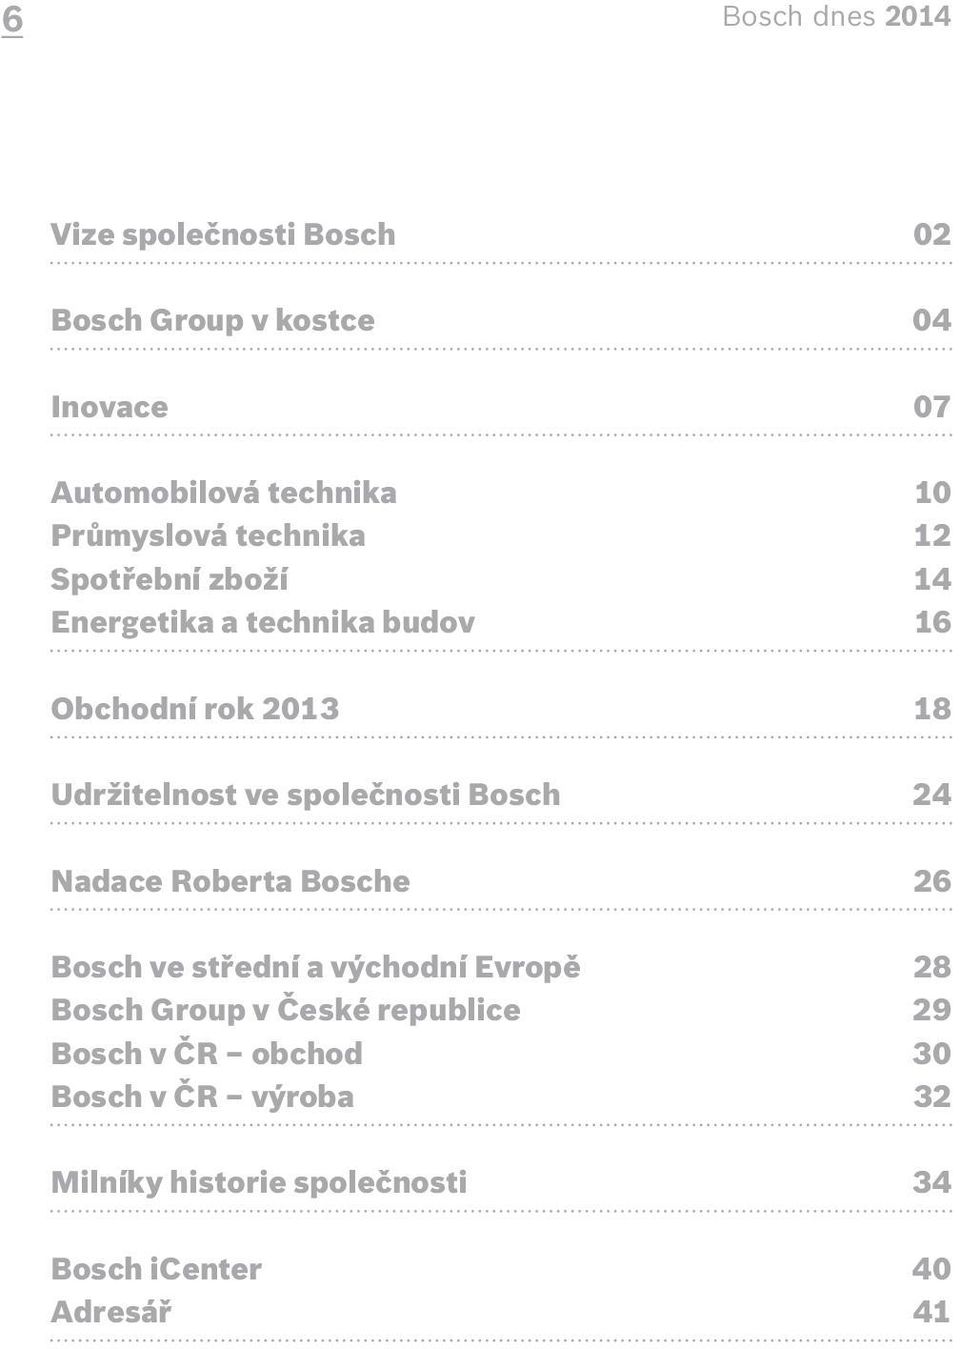 ve společnosti Bosch 24 Nadace Roberta Bosche 26 Bosch ve střední a východní Evropě 28 Bosch Group v České